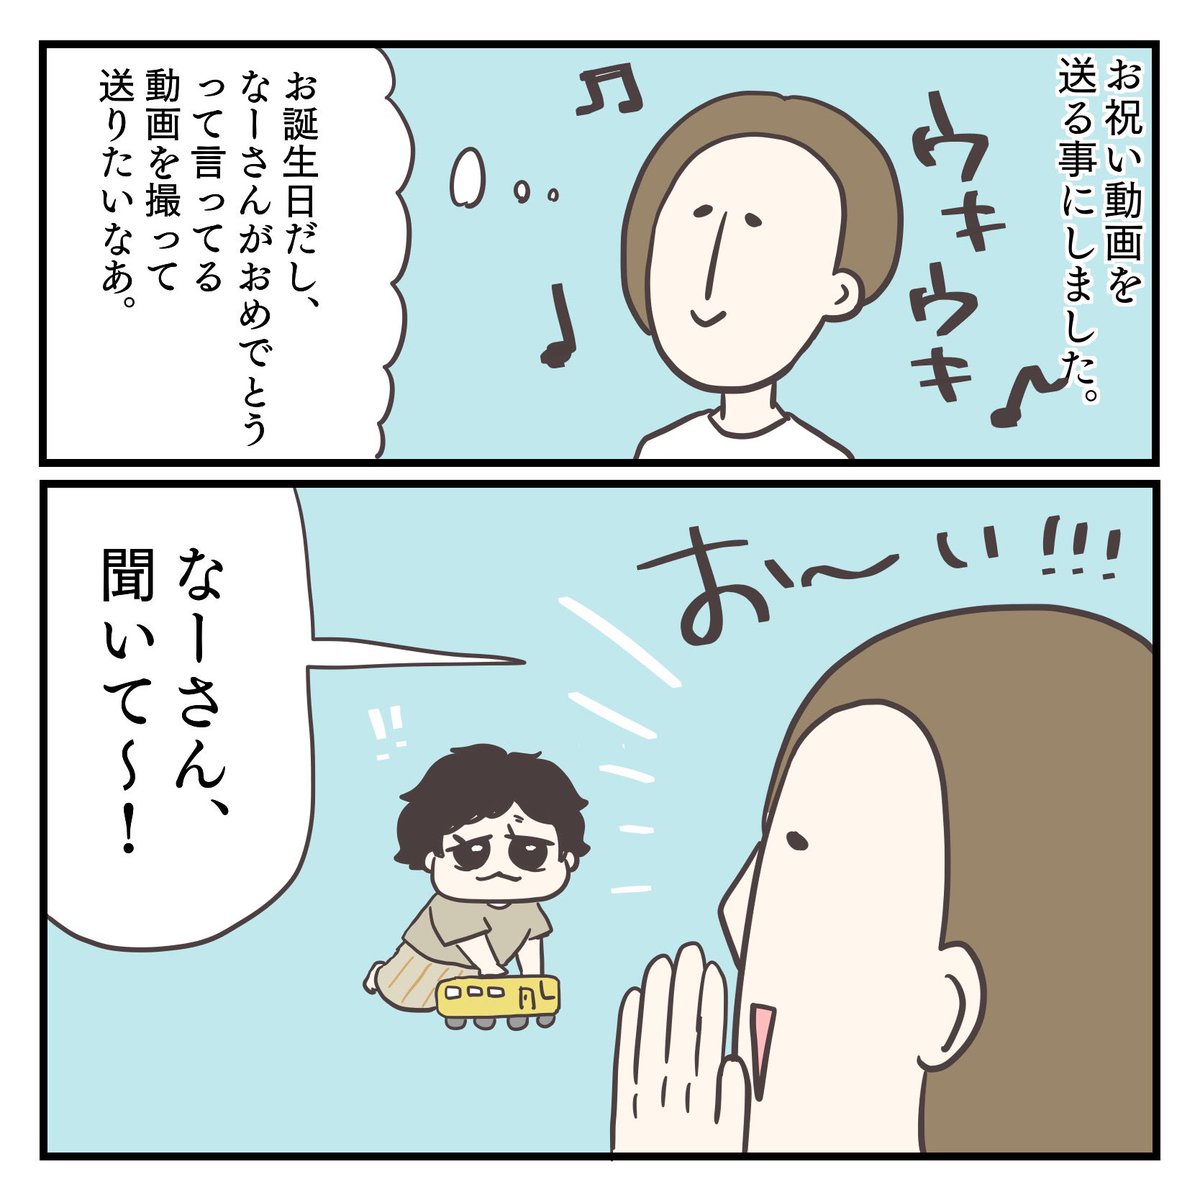 おめでとう(1/3)
#育児漫画 #2歳 #過去作 